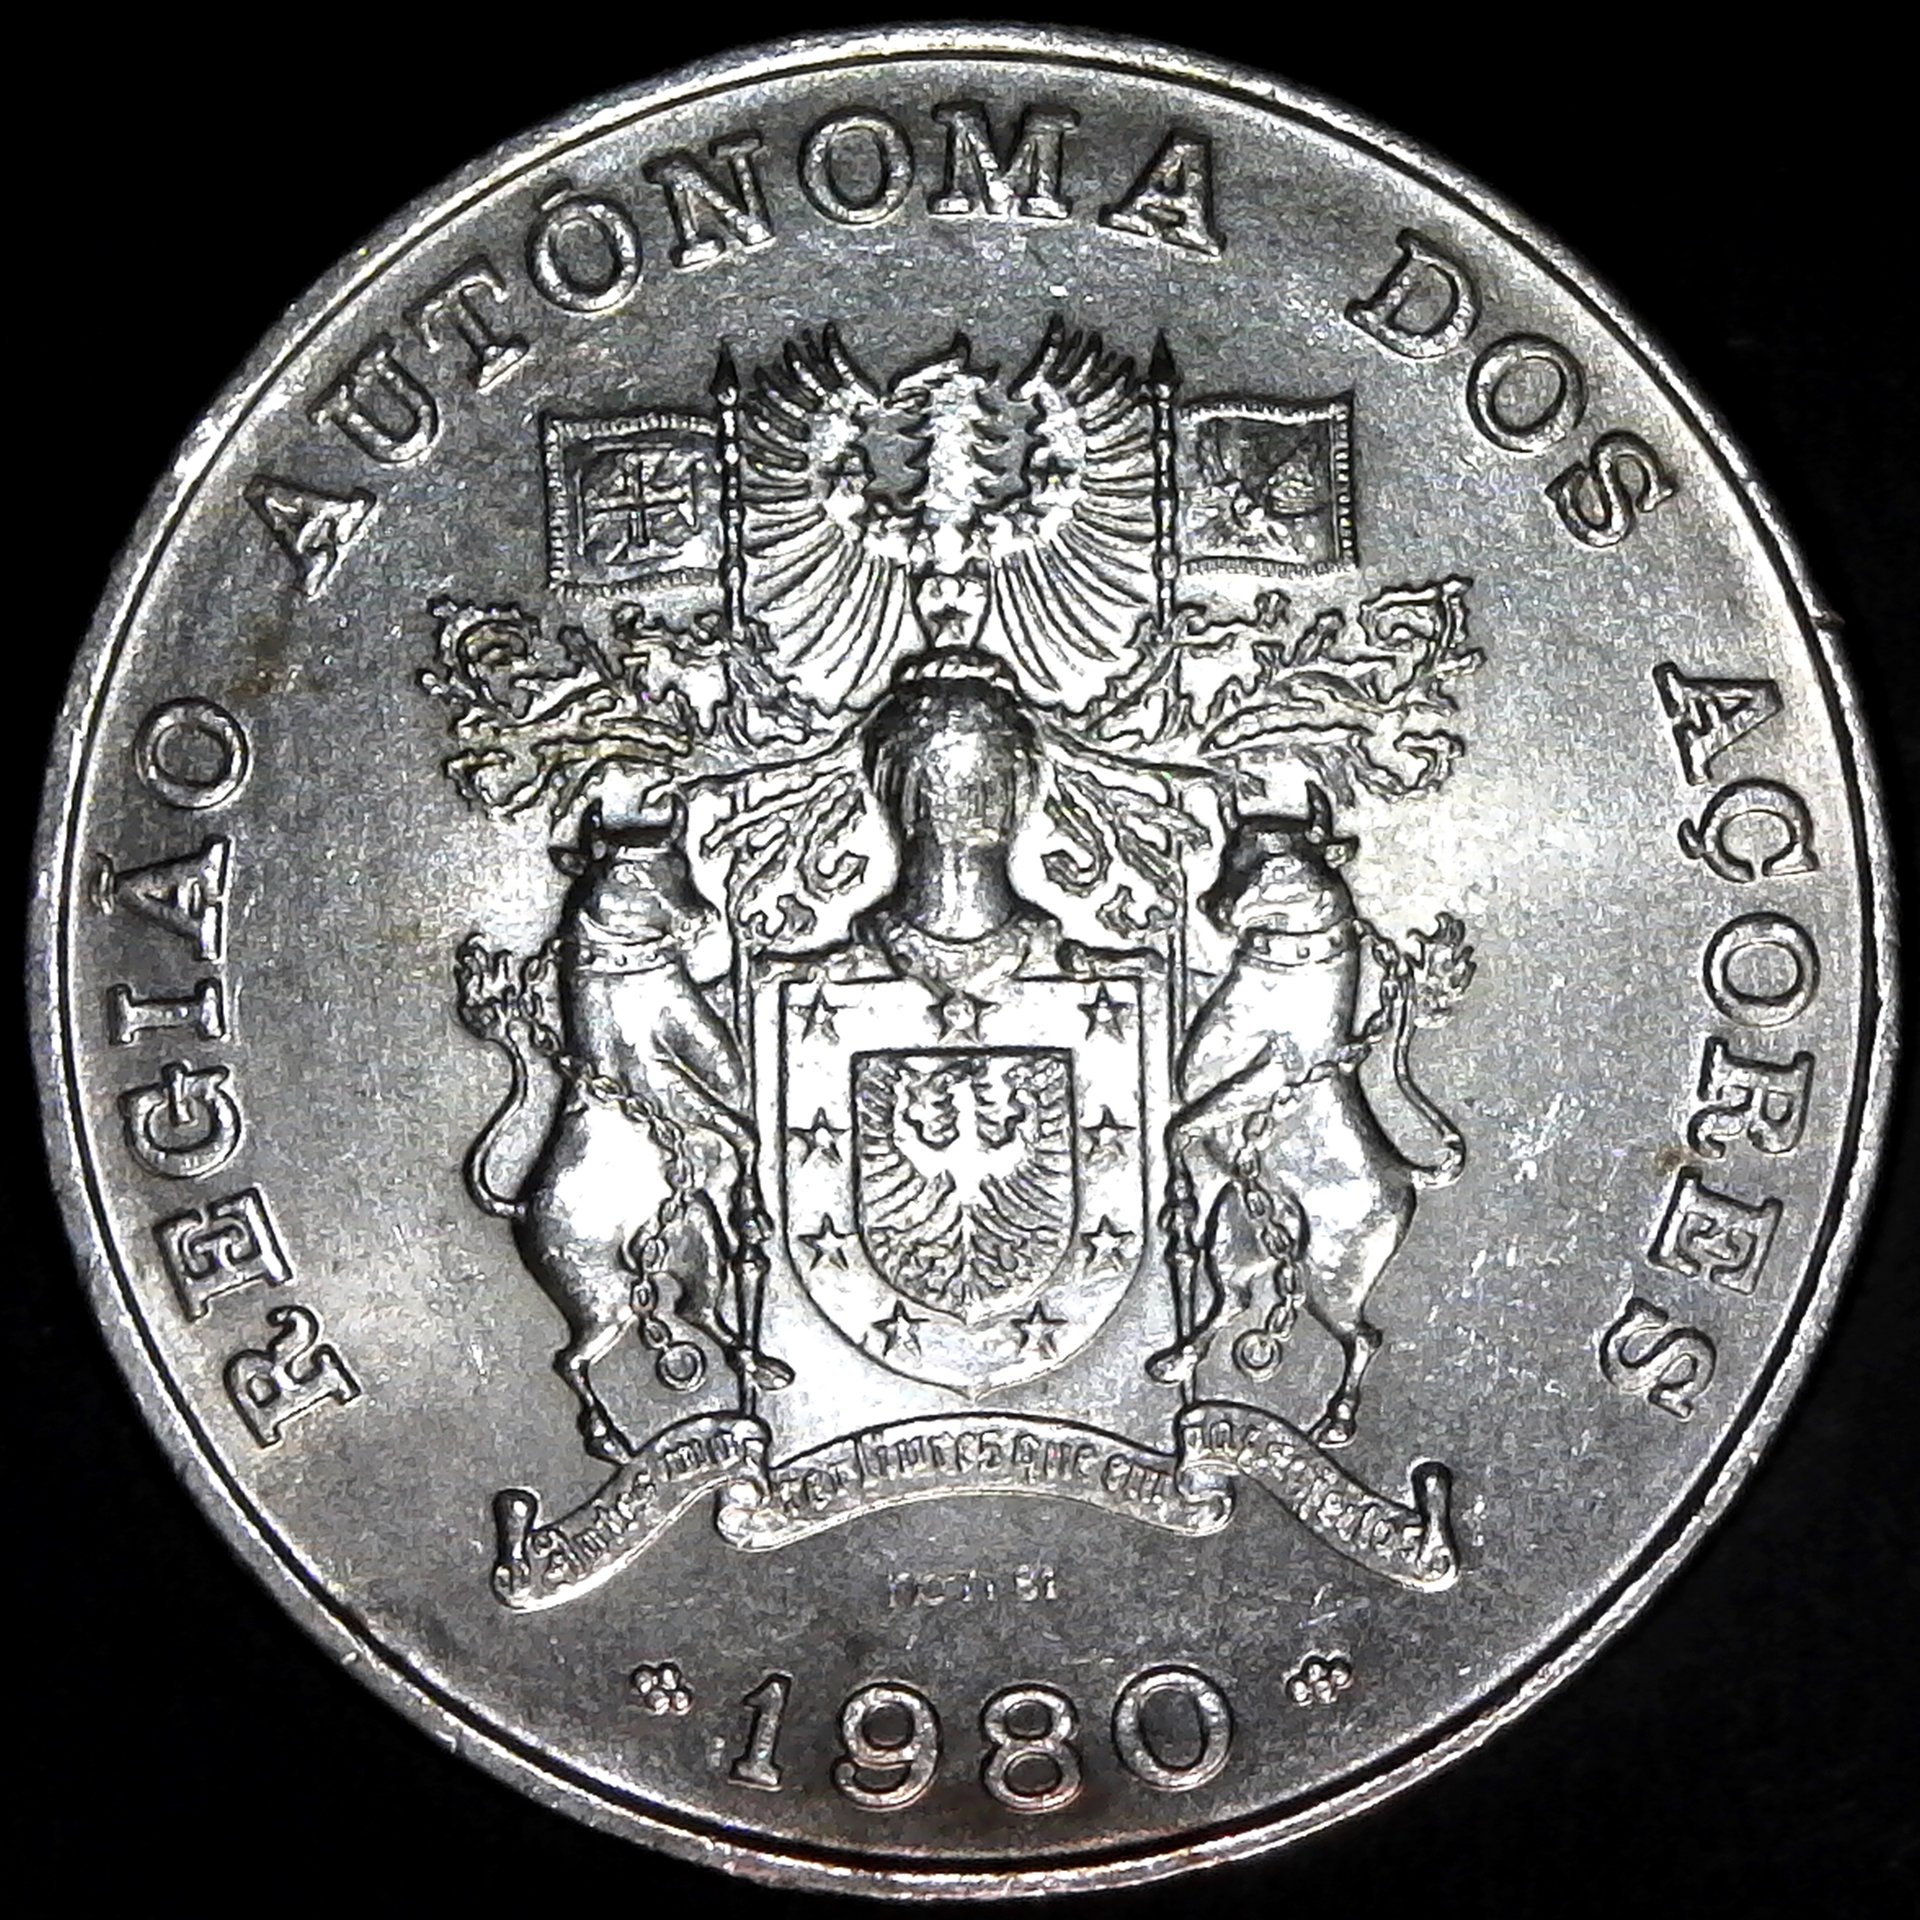 Portugal Azores 100 Escudos 1980 rev.jpg